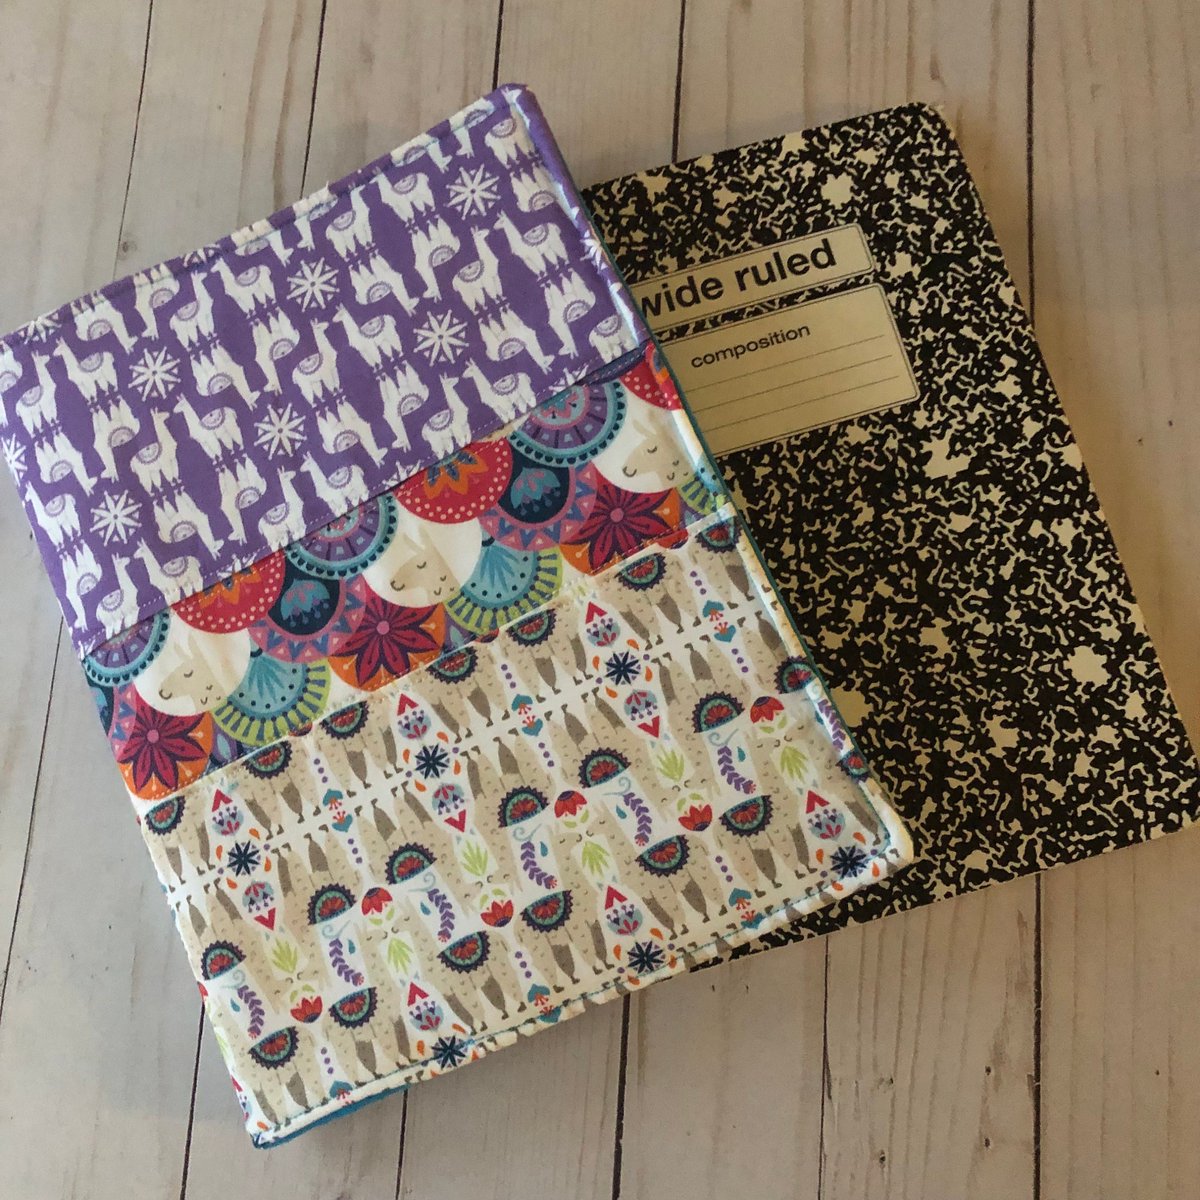 Llama Patchwork Notebook Cover tuppu.net/5e8a4964 #craftshout #craftbizparty #PurpleNotebook